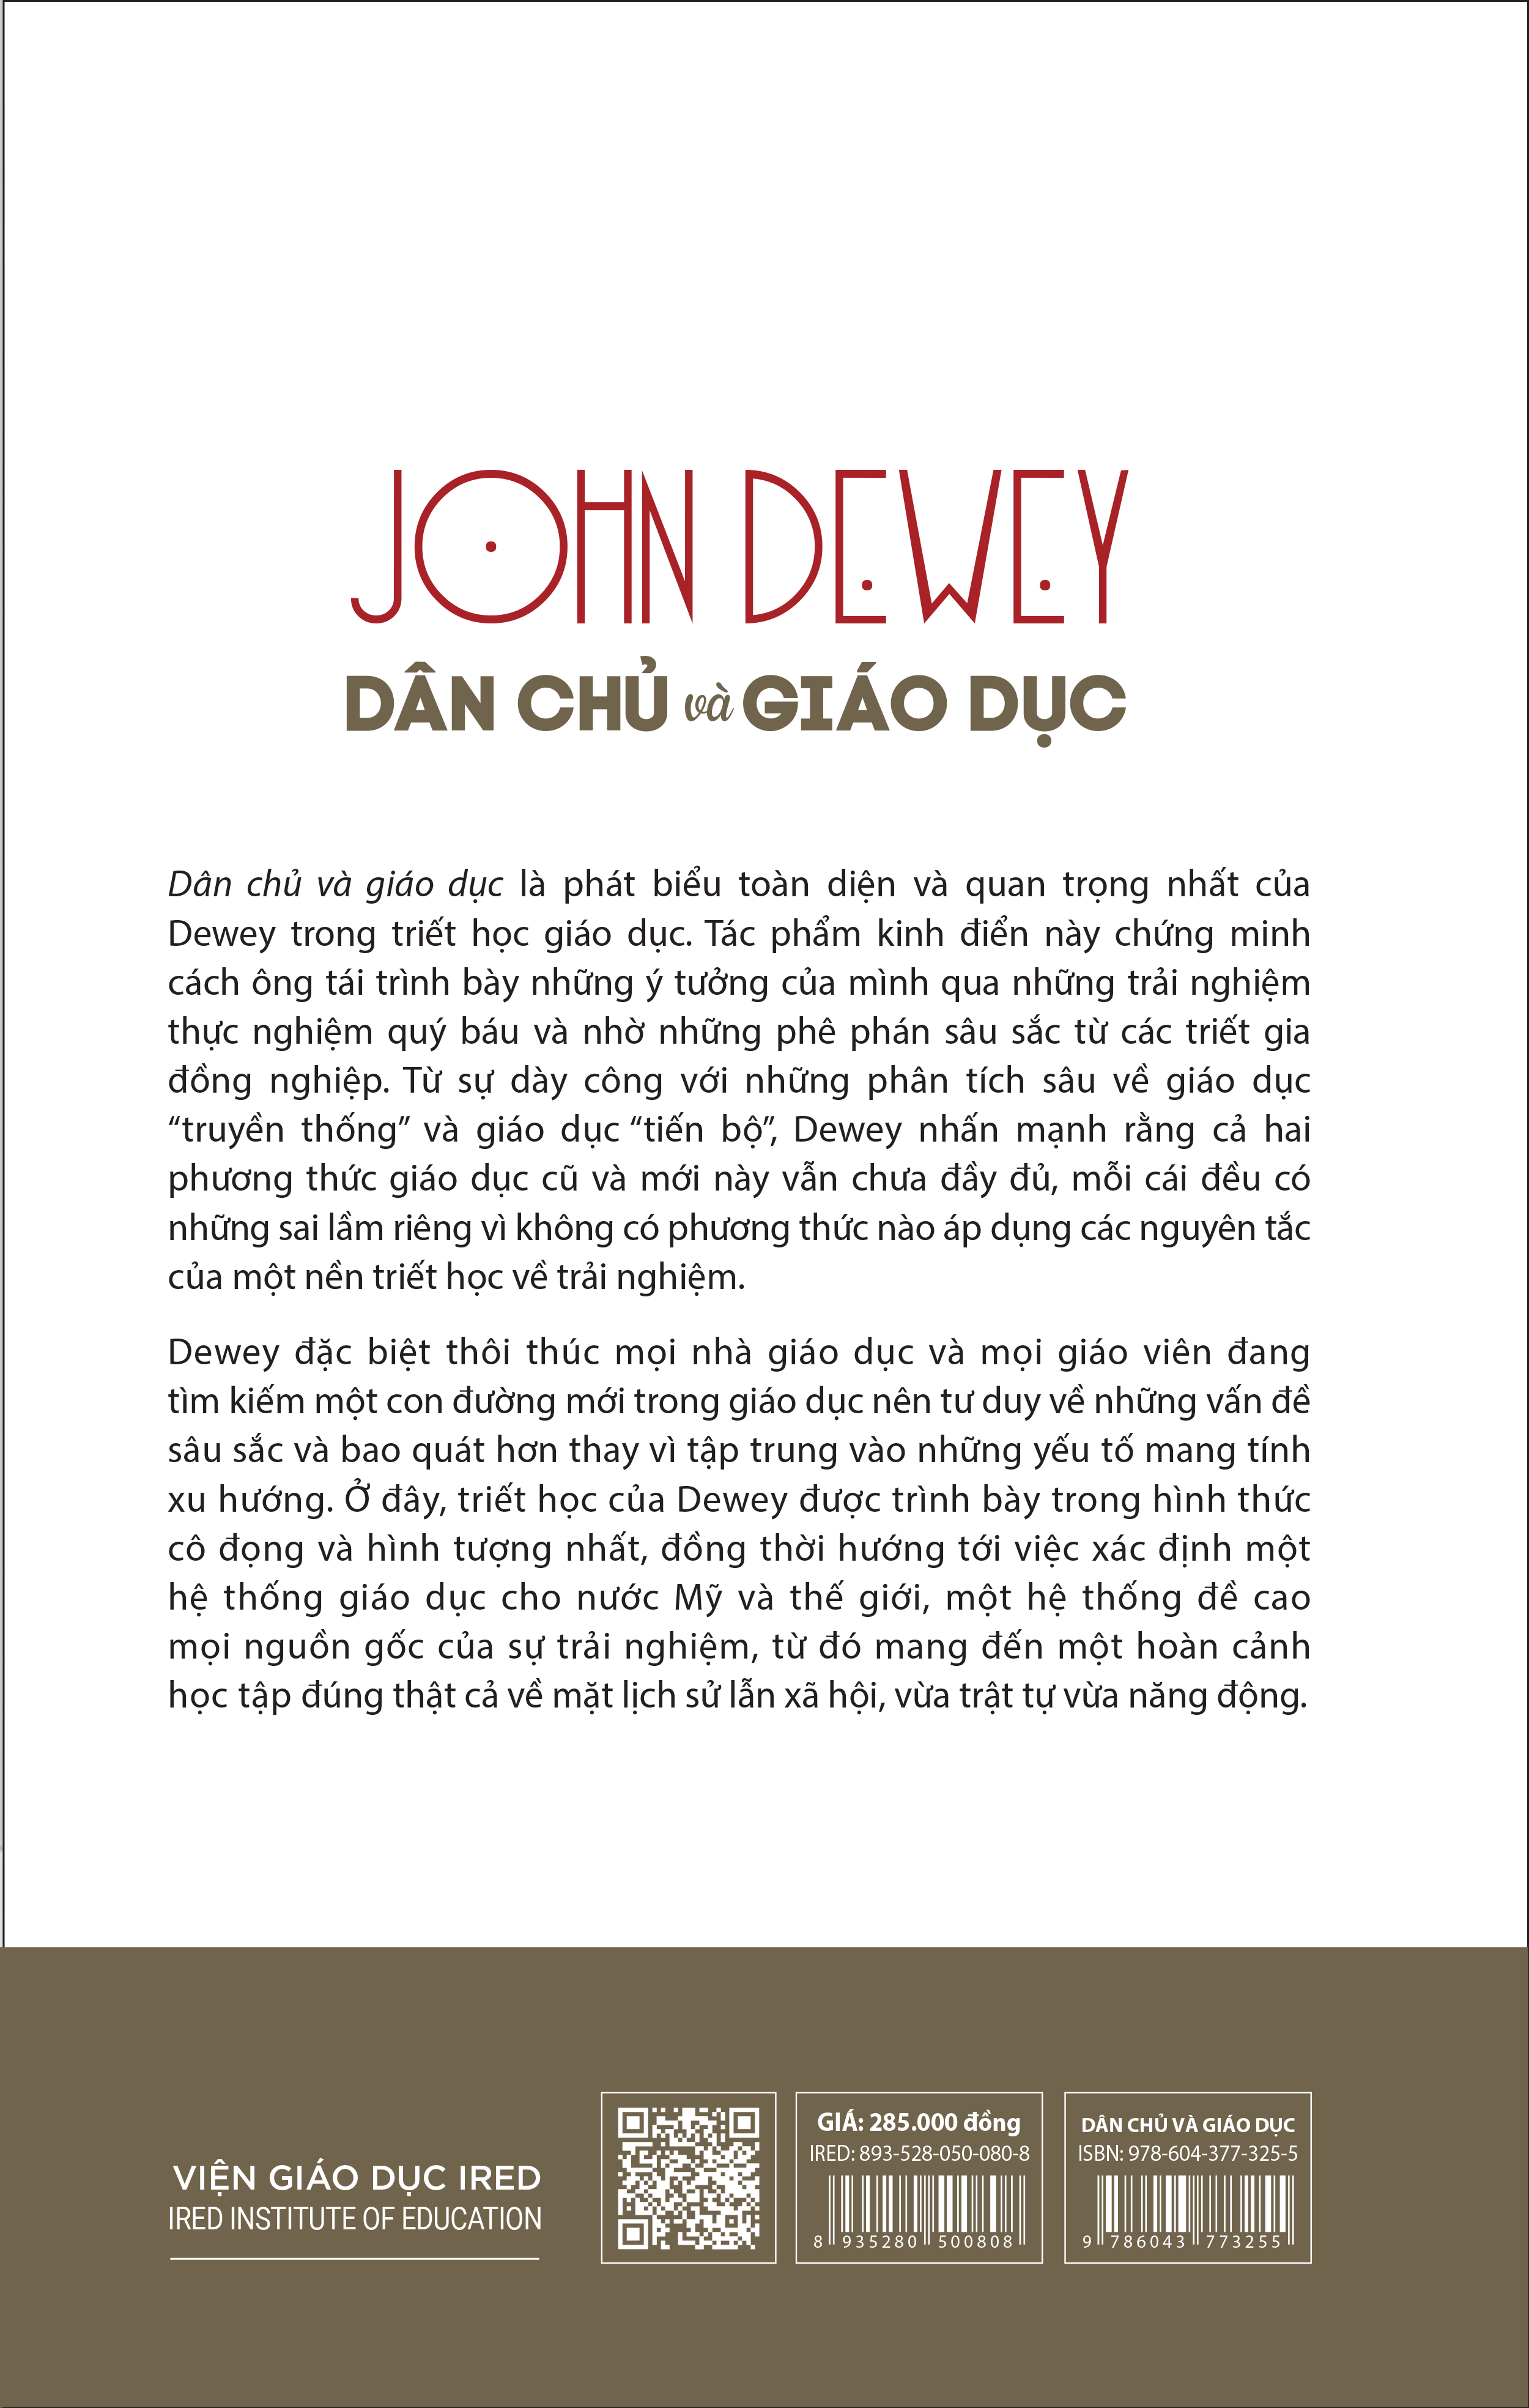 (Bìa Cứng) DÂN CHỦ VÀ GIÁO DỤC (Democracy and Education) - John Dewey - Nguyễn Sỹ Nguyên dịch, Chu Hảo hiệu đính